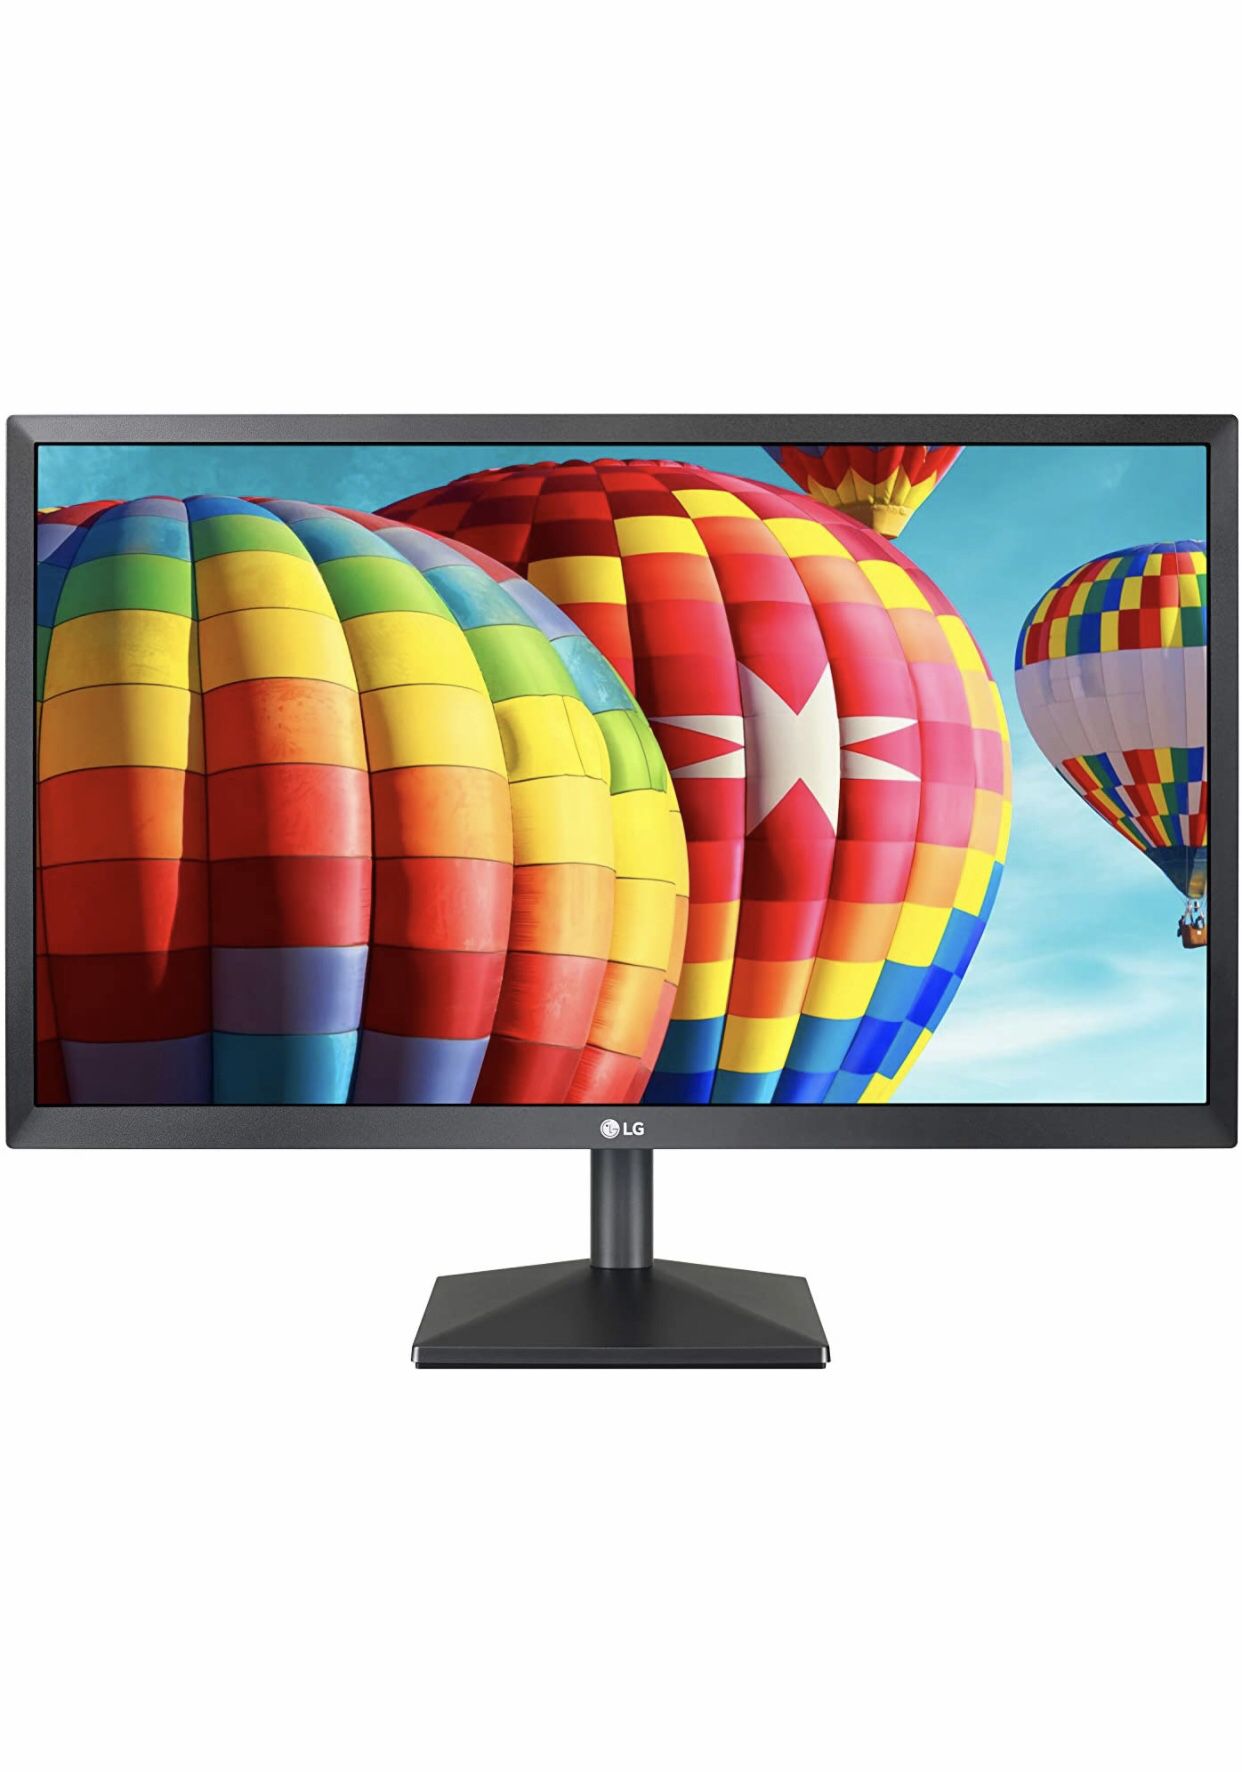 LG 27”  Full HD IPS LED Monitor - New